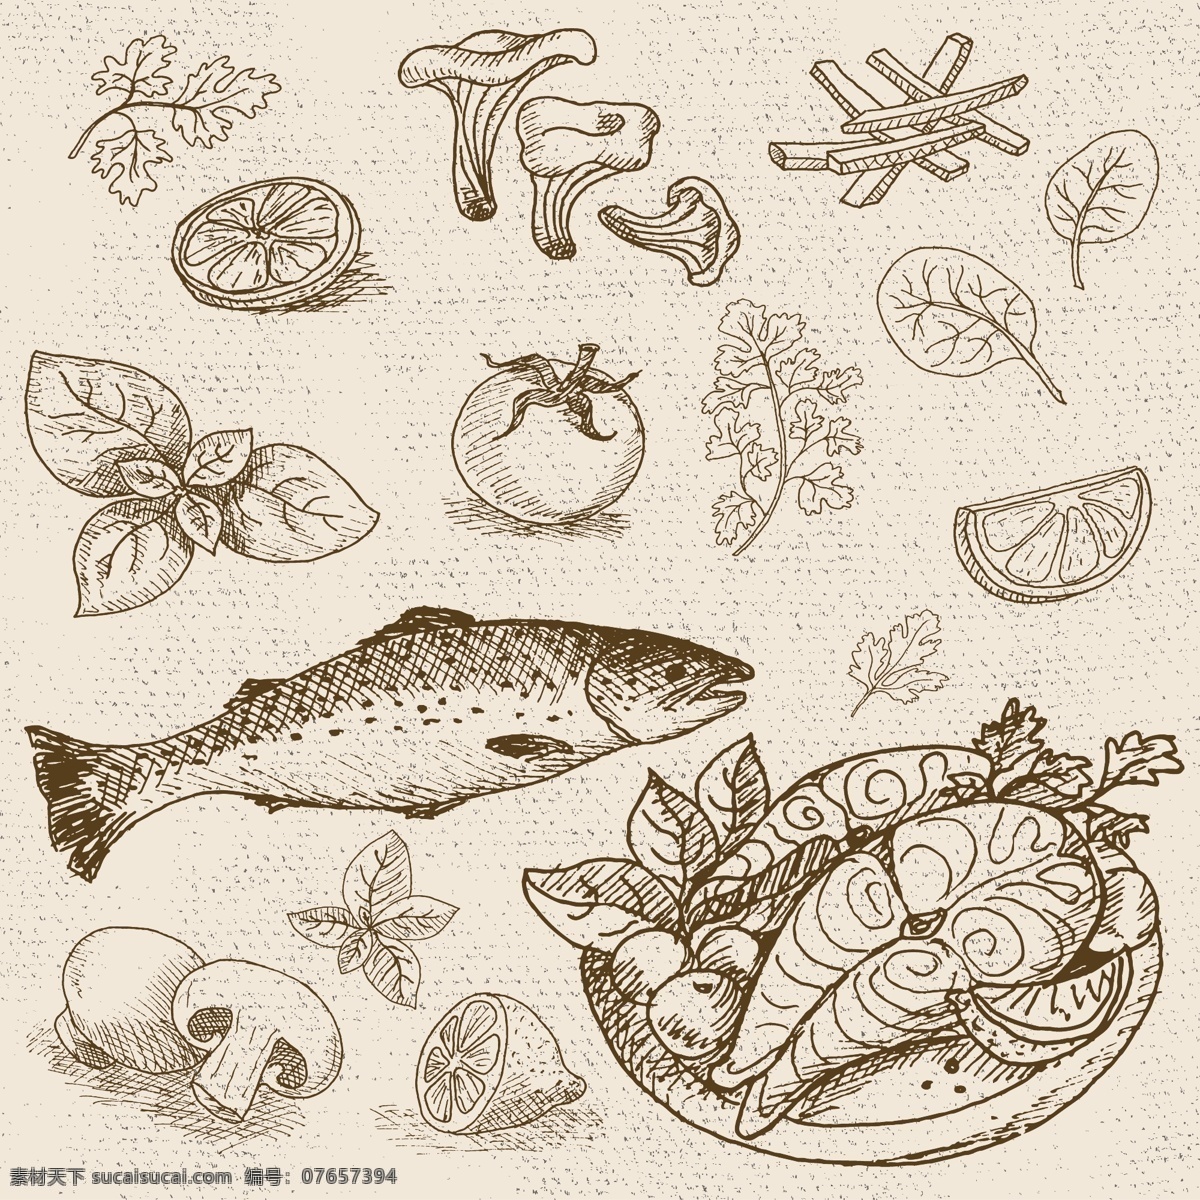 鱼肉 蘑菇 蔬菜 调料 烹饪 饮食 矢量 合集 厨房 水果 柠檬 黑板 手绘 英文 插画 线条 卡通